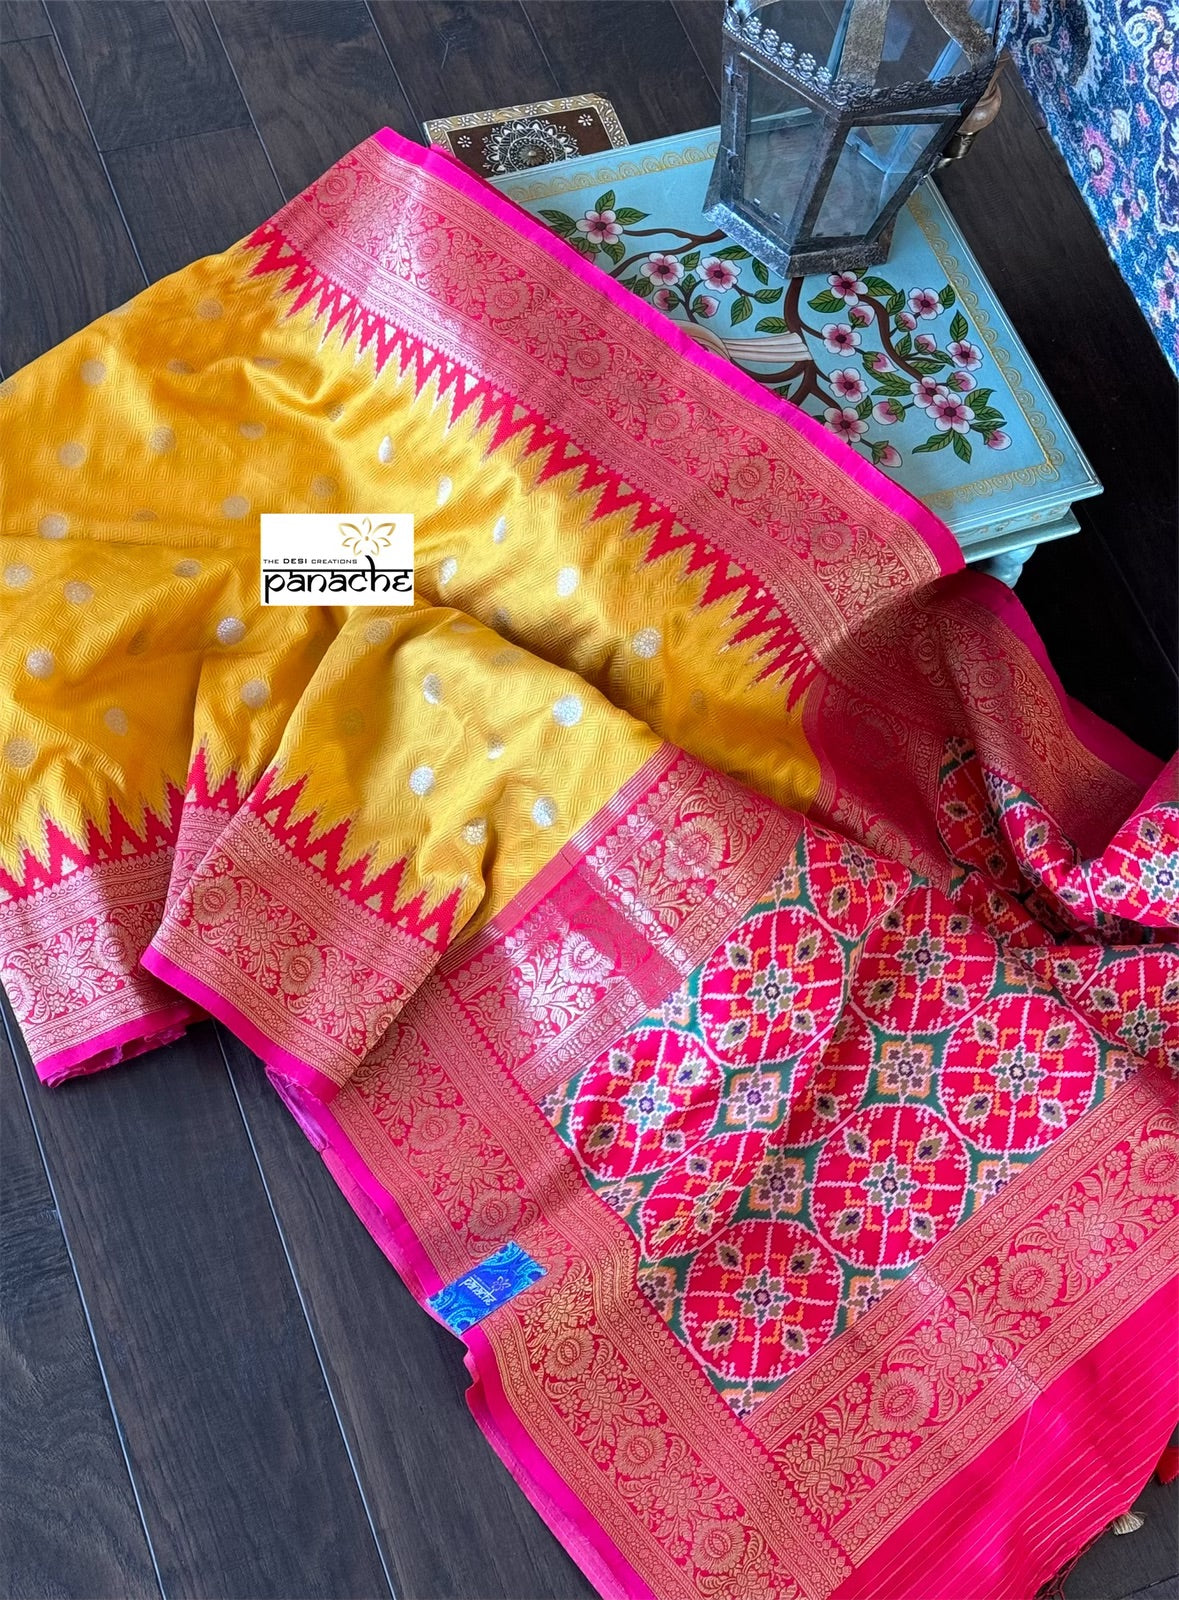 Soft Silk Patola Banarasi - Yellow Pink Red